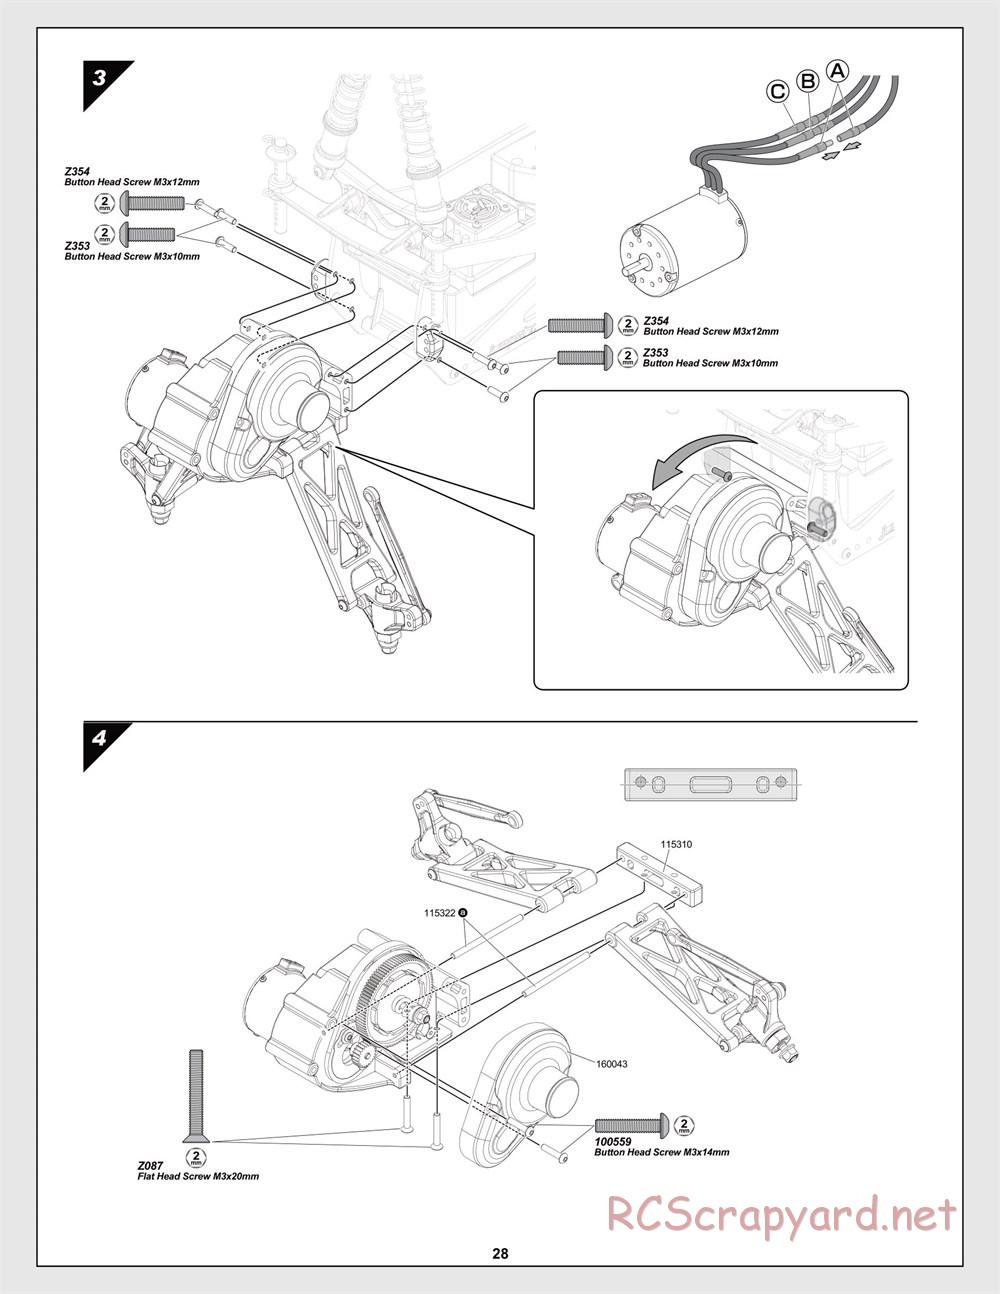 HPI - Jumpshot MT Flux - Manual - Page 28